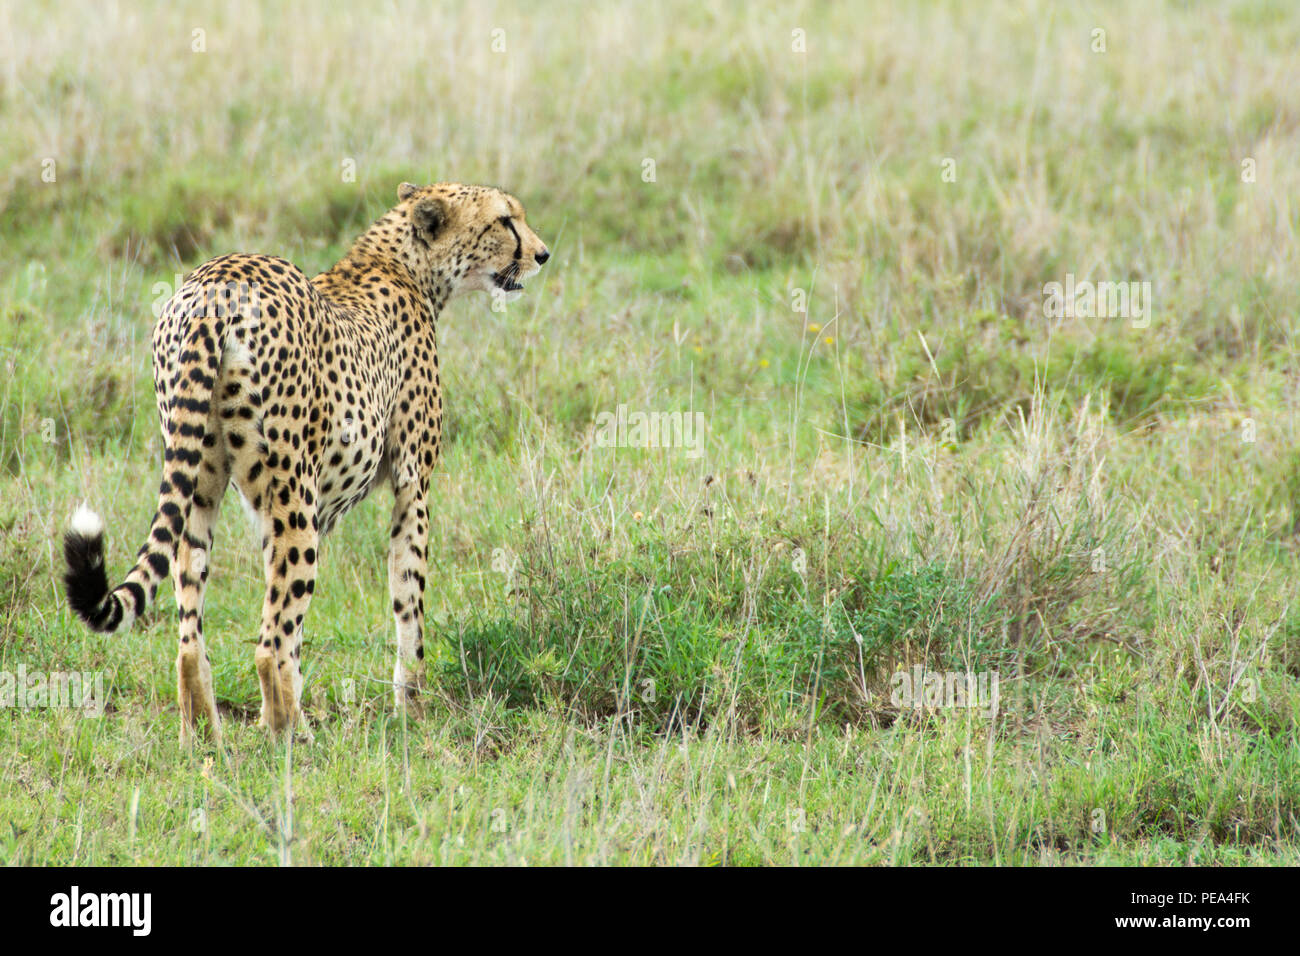 Un hombre joven guepardo buscando una comida del día en el Parque nacional Serengeti, Tanzania. Foto de stock